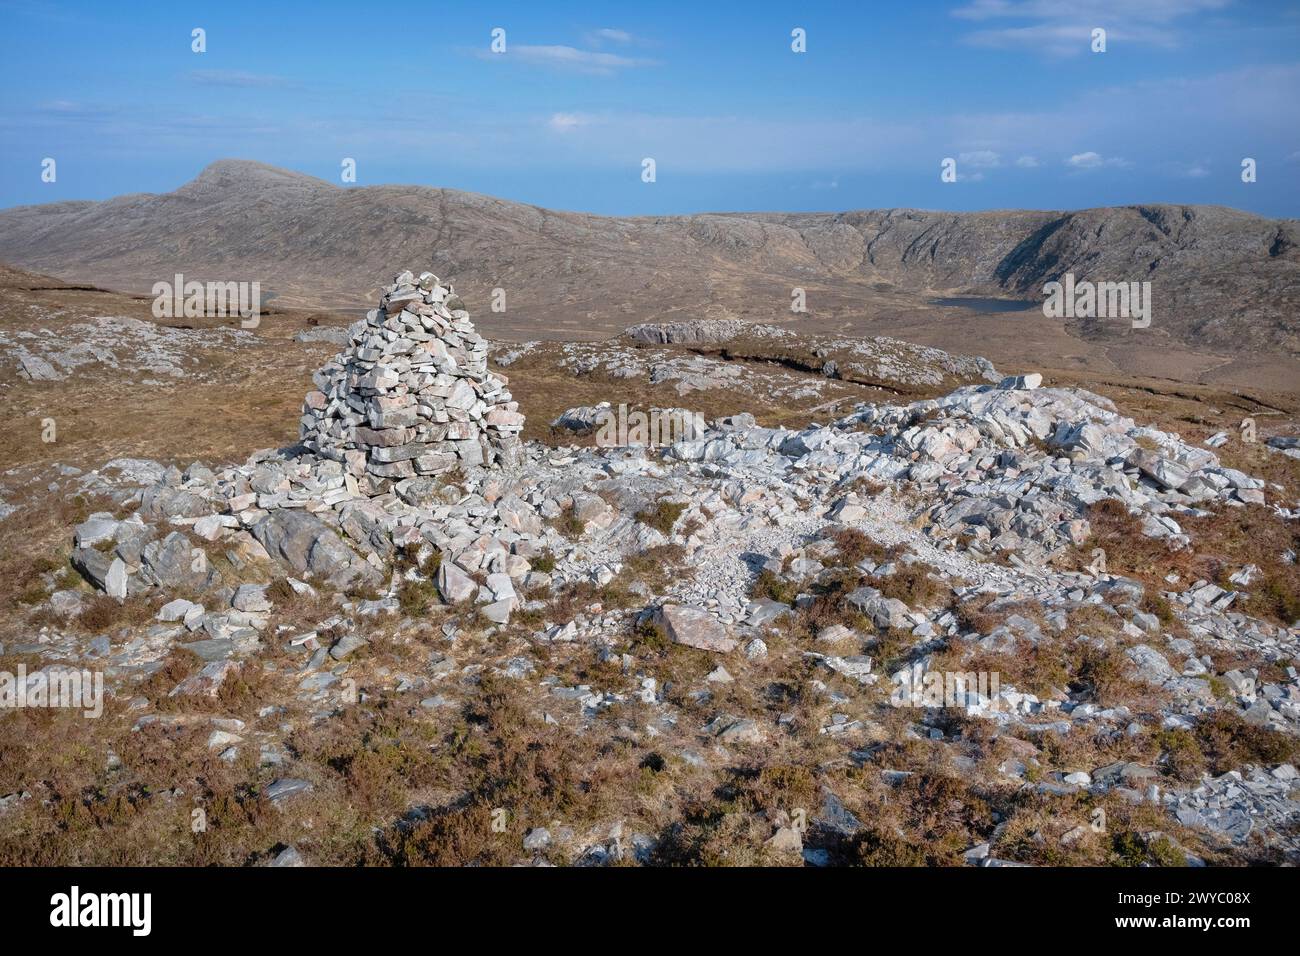 Repubblica d'Irlanda, Contea di Donegal, Gweedore, mini cairn ai piedi dell'Errigal, che è la montagna più alta del Donegal. Foto Stock